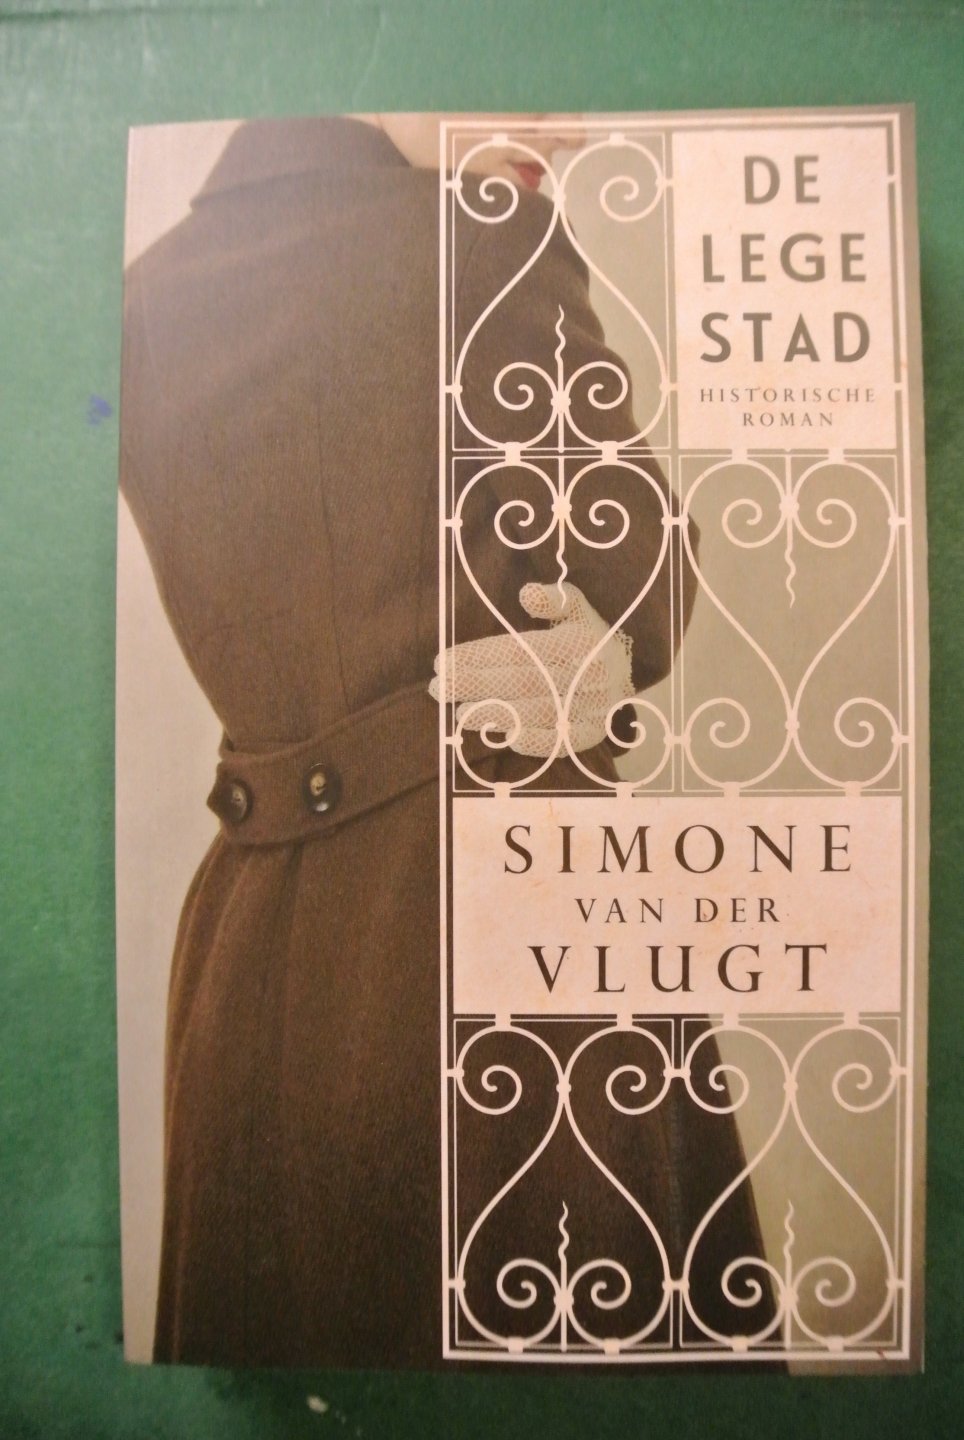 Vlugt, Simone van der - DE LEGE STAD. Historische roman